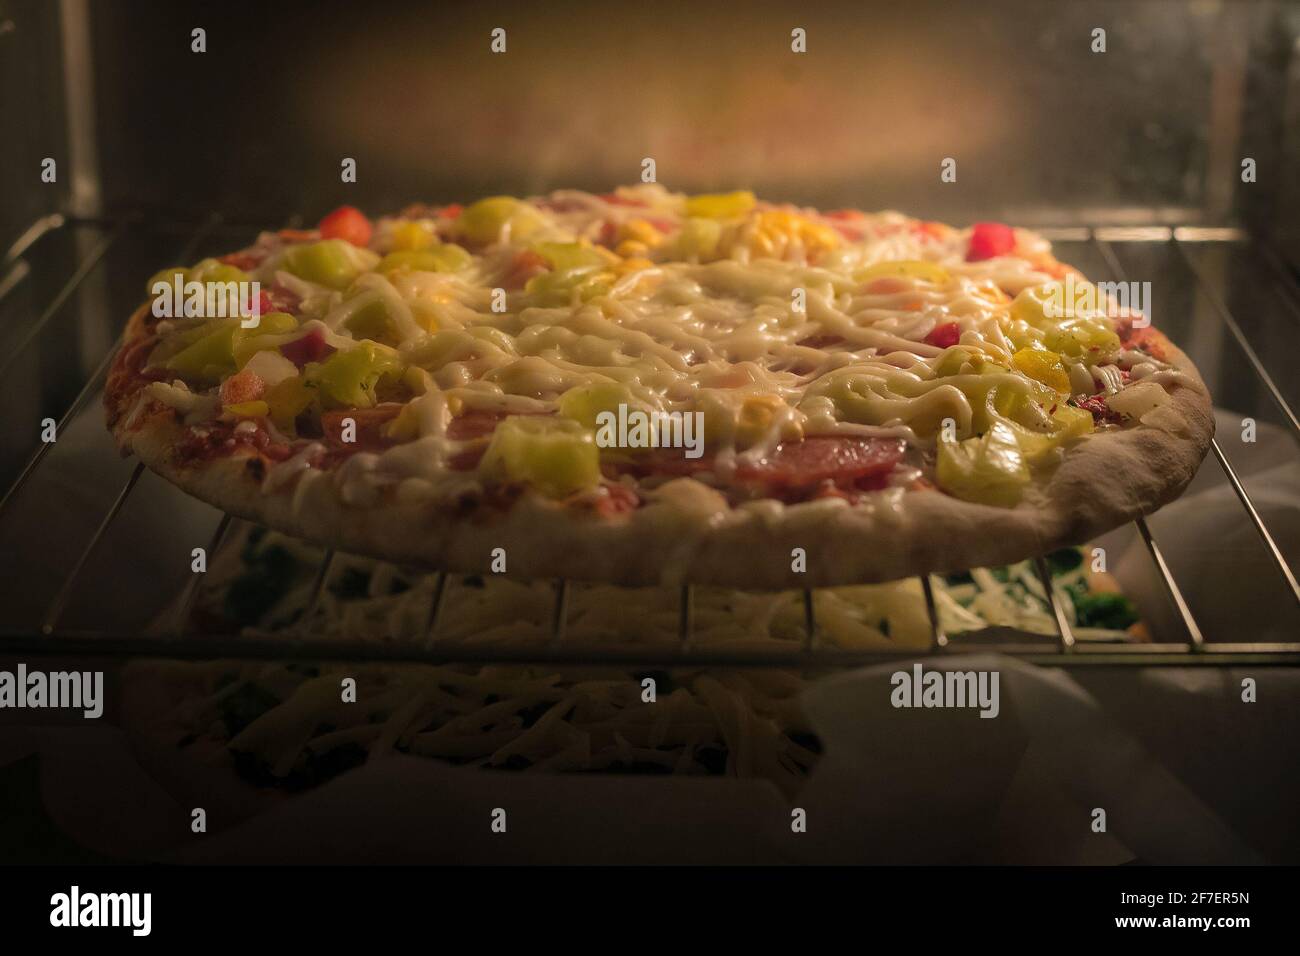 Tiefkühlpizza aus einem Supermarkt oder Geschäft wird in einem heißen  elektrischen Ofen gesehen. Zwei Pizzas im Supermarkt, die übereinander  backen Stockfotografie - Alamy